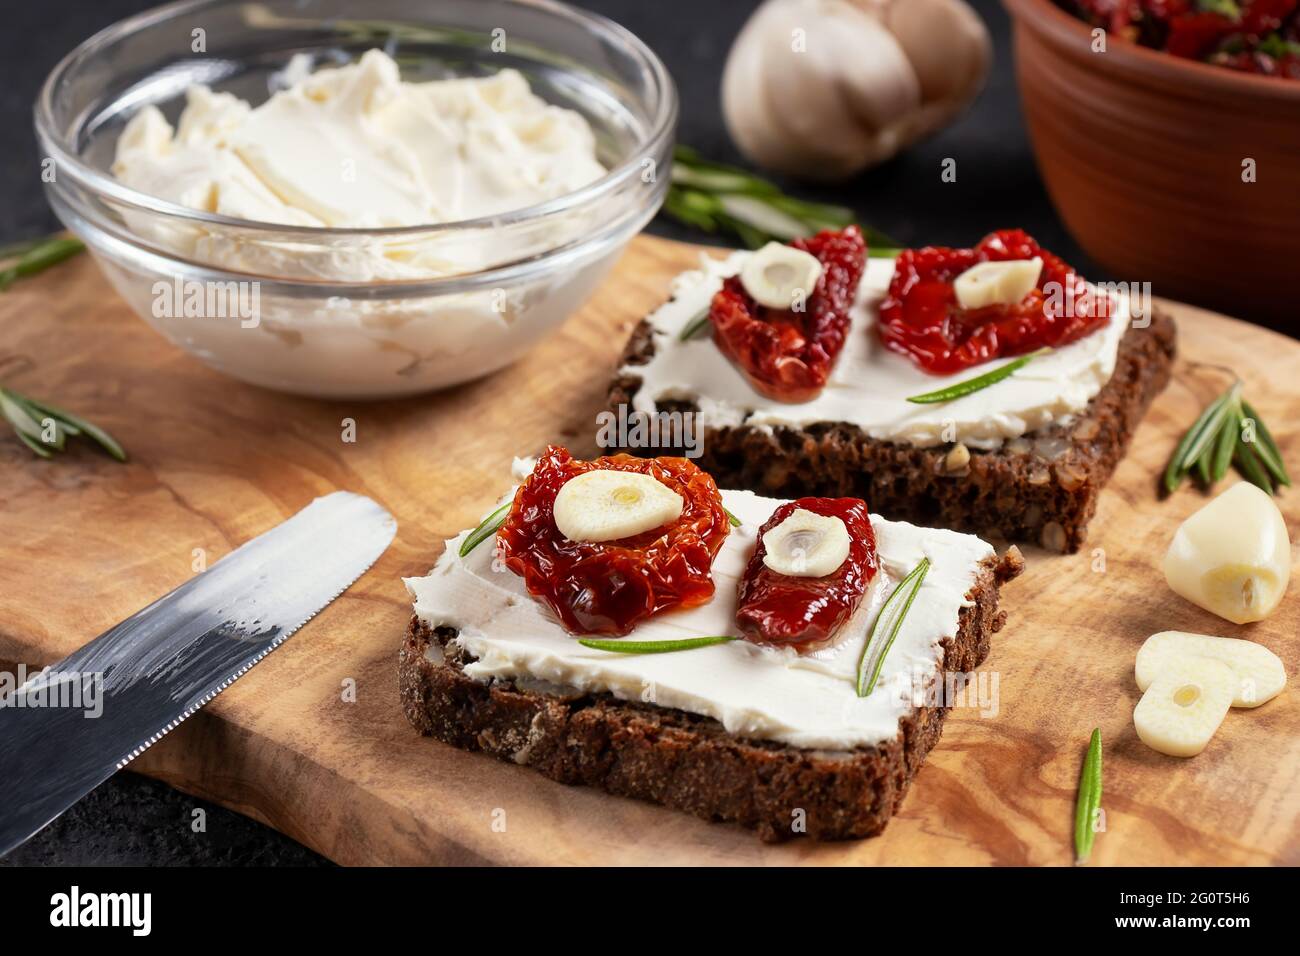 Petits-sandwiches multigrains faits maison avec fromage à la crème et tomates séchées sur un plateau en bois, gros plan. Concept de saine alimentation. Banque D'Images